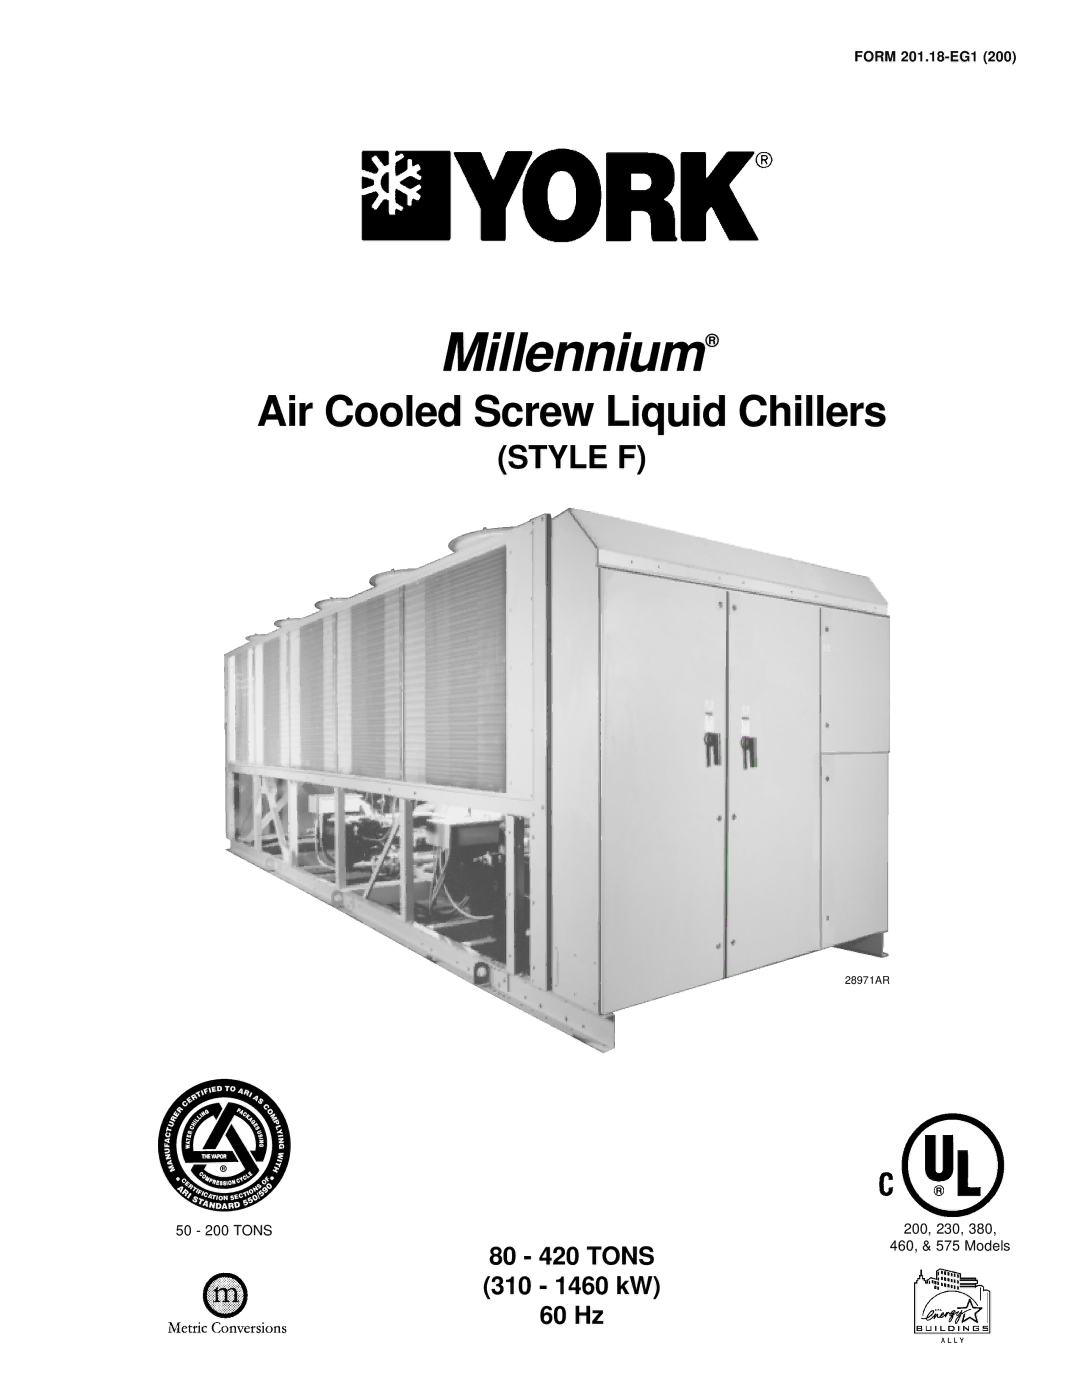 York 28971AR manual Millennium 